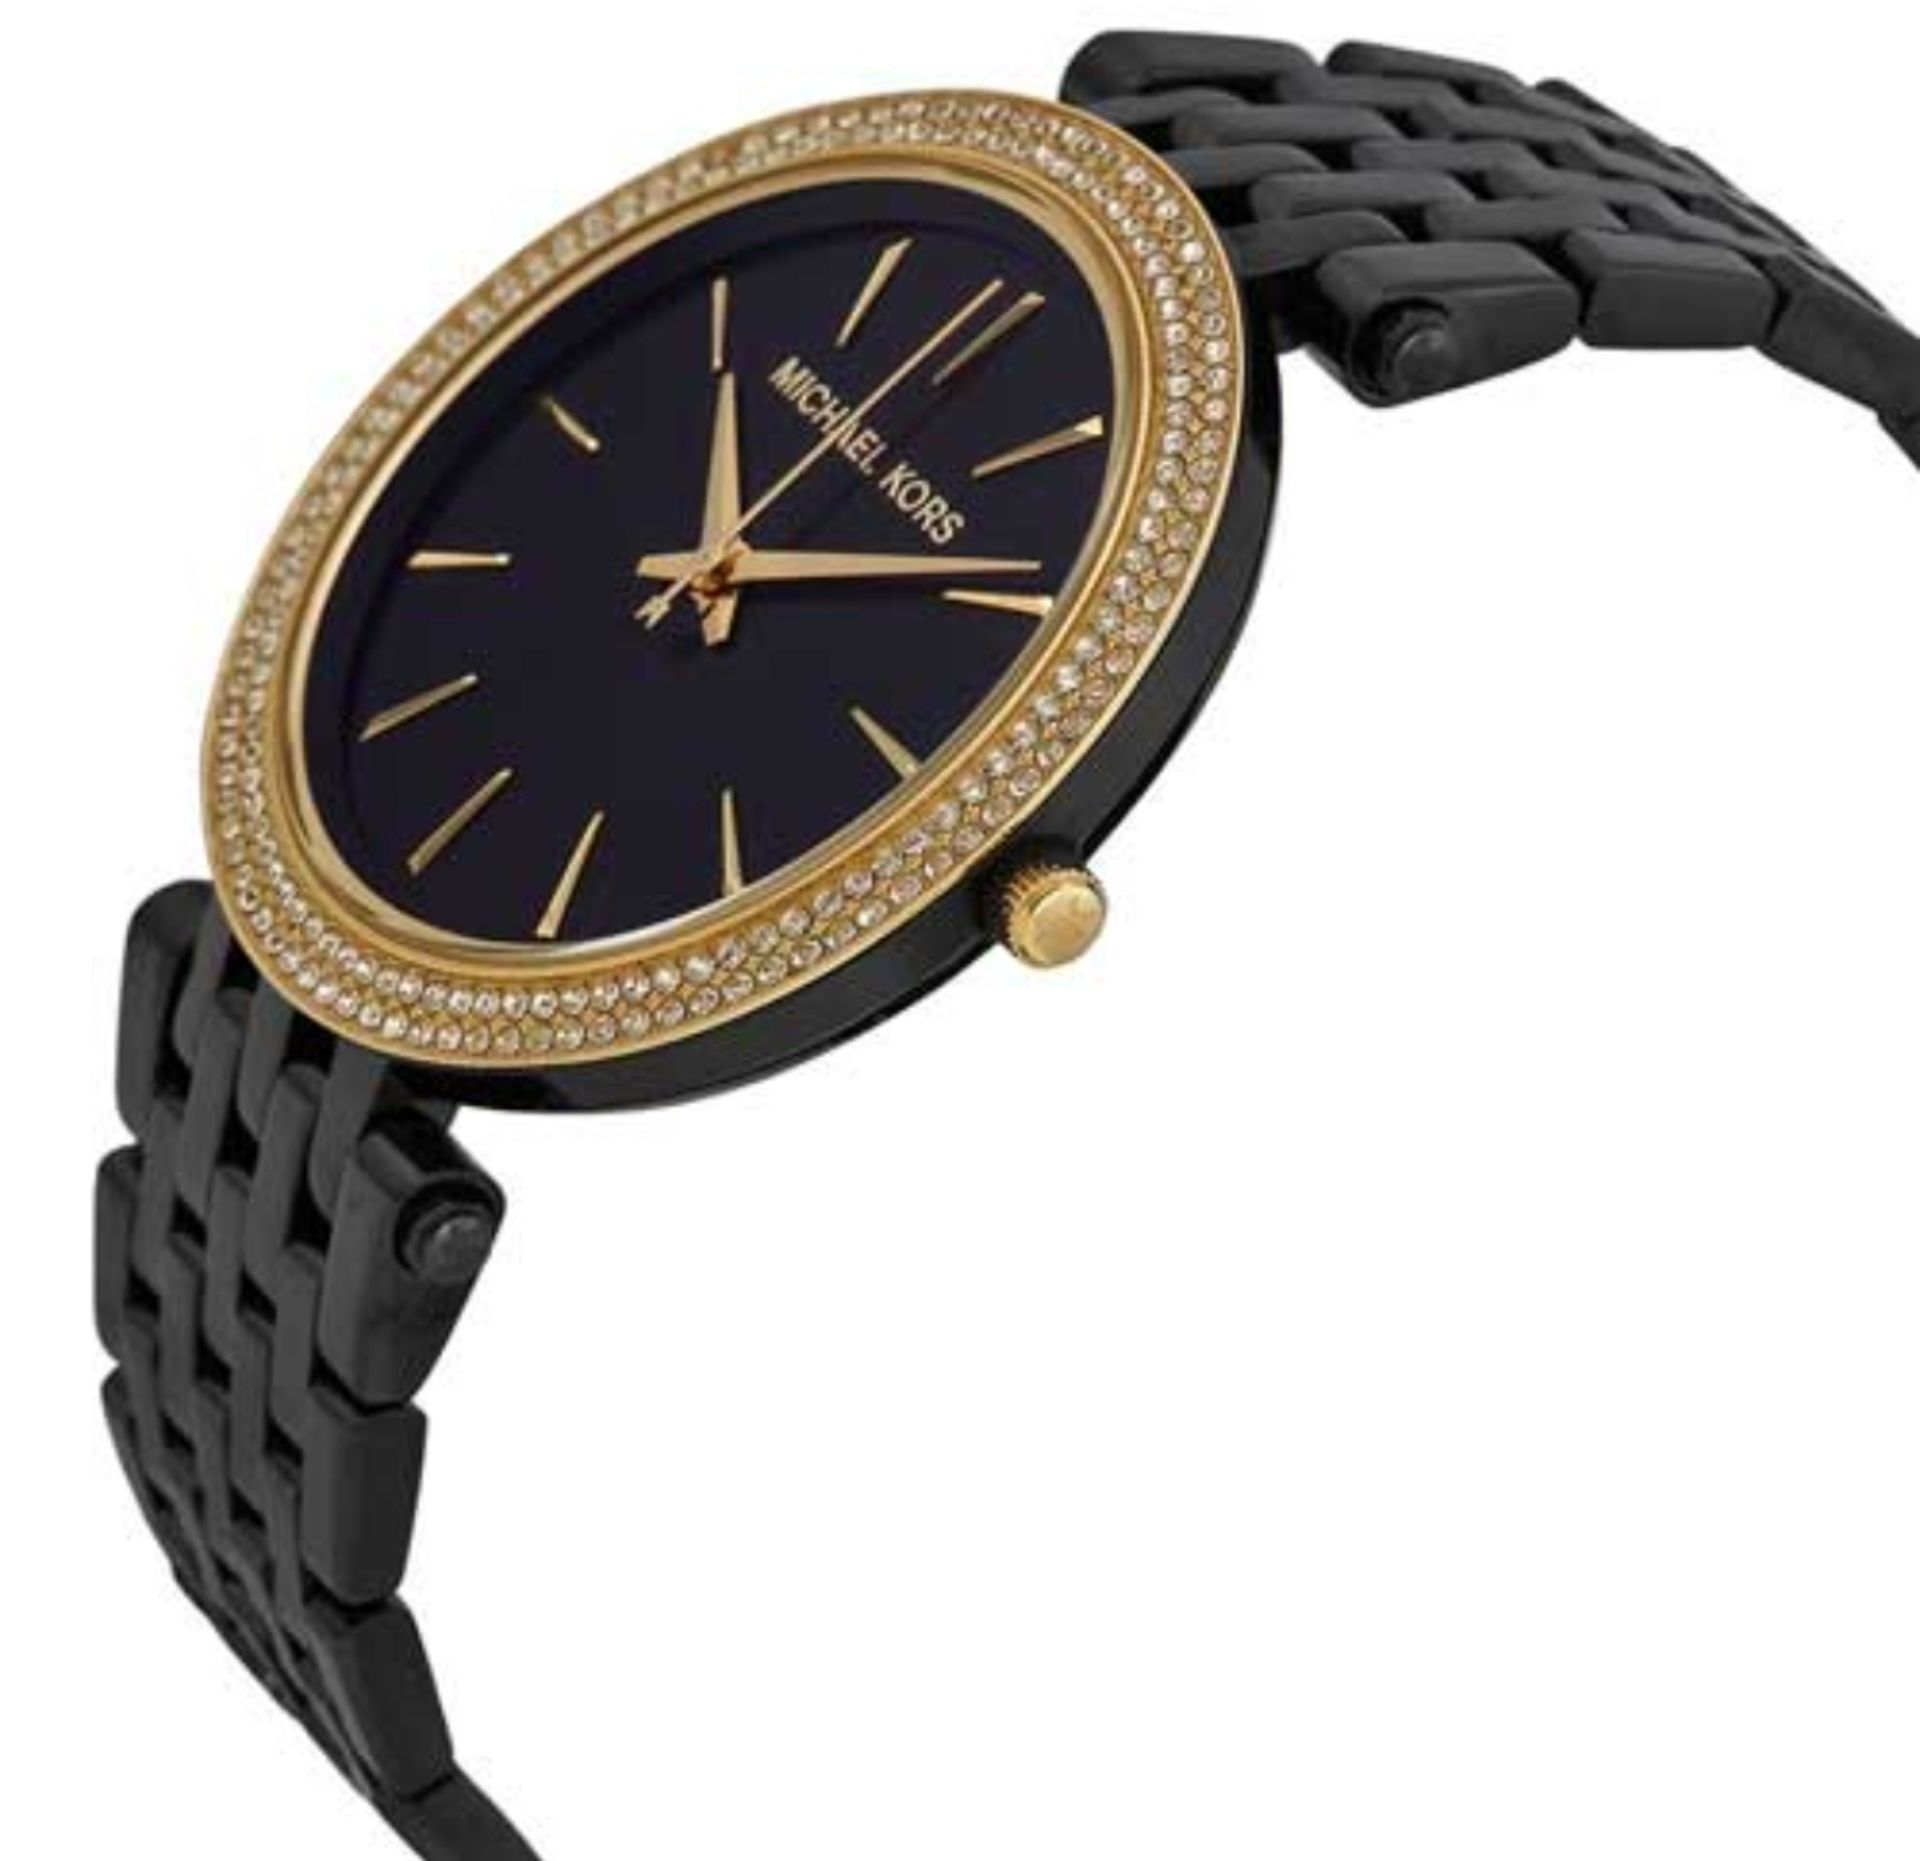 Michael Kors MK3322 Darci Gold & Black Stainless Steel Ladies Watch - Image 6 of 7